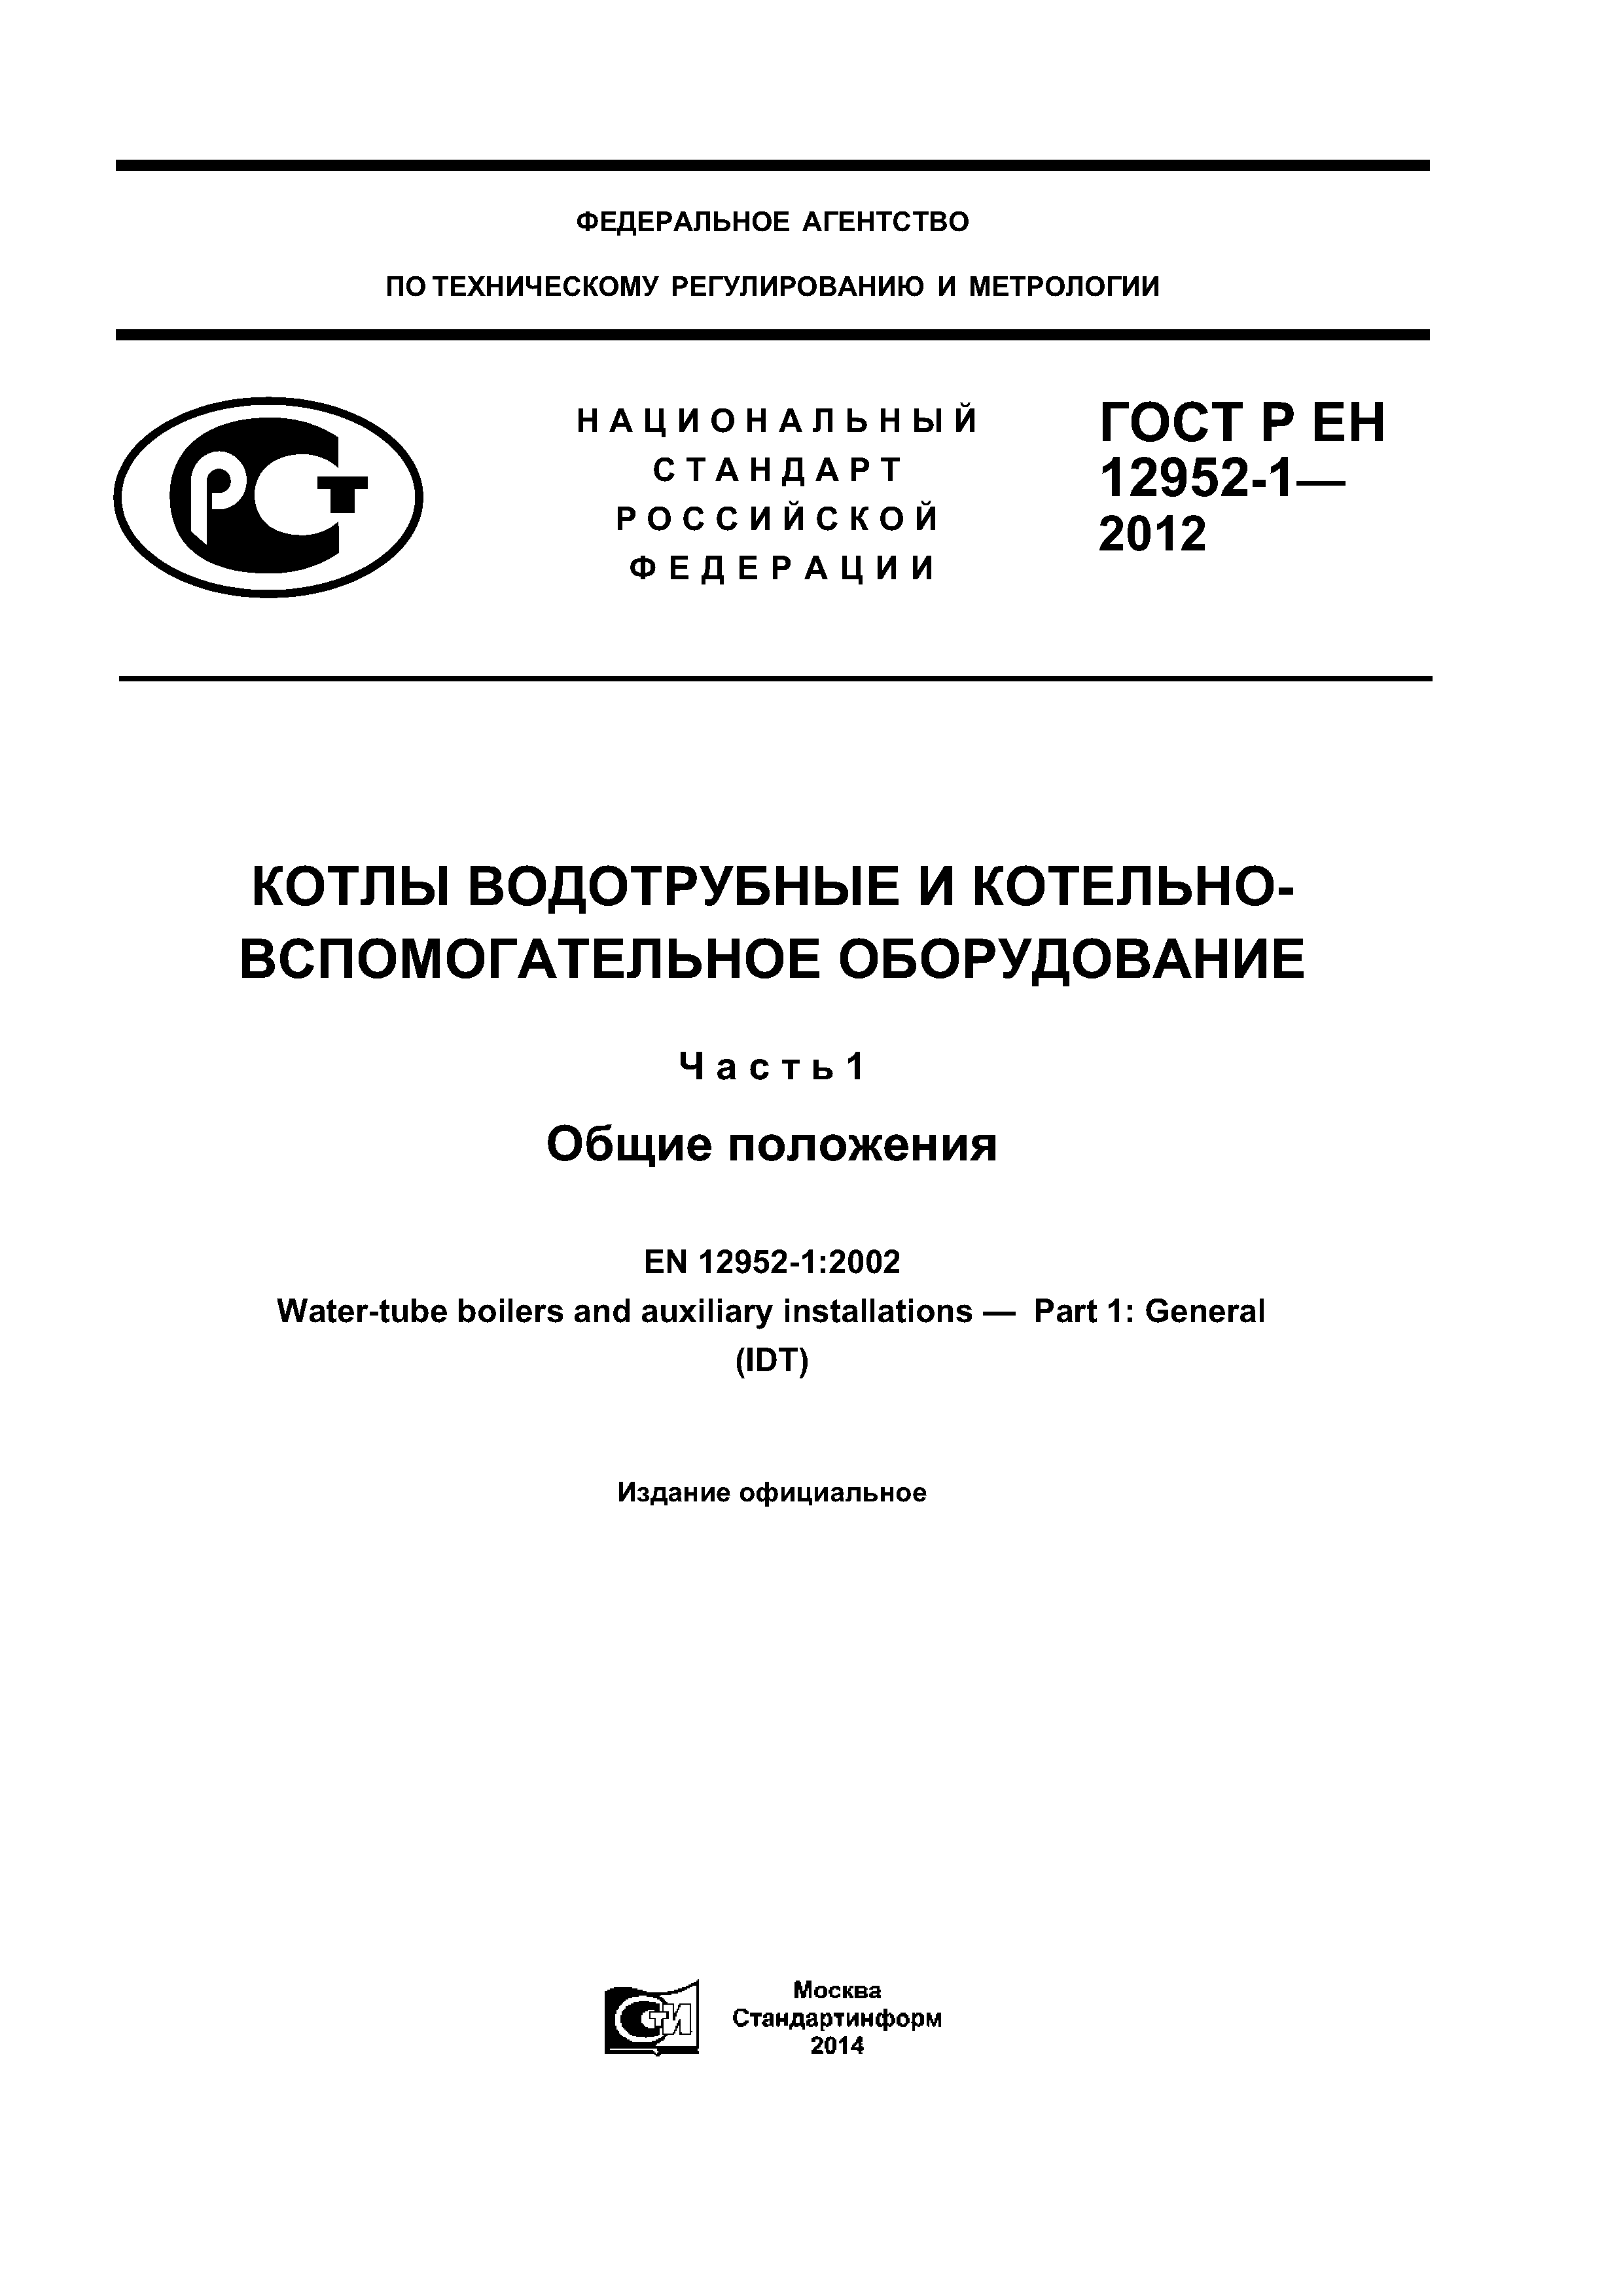 ГОСТ Р ЕН 12952-1-2012